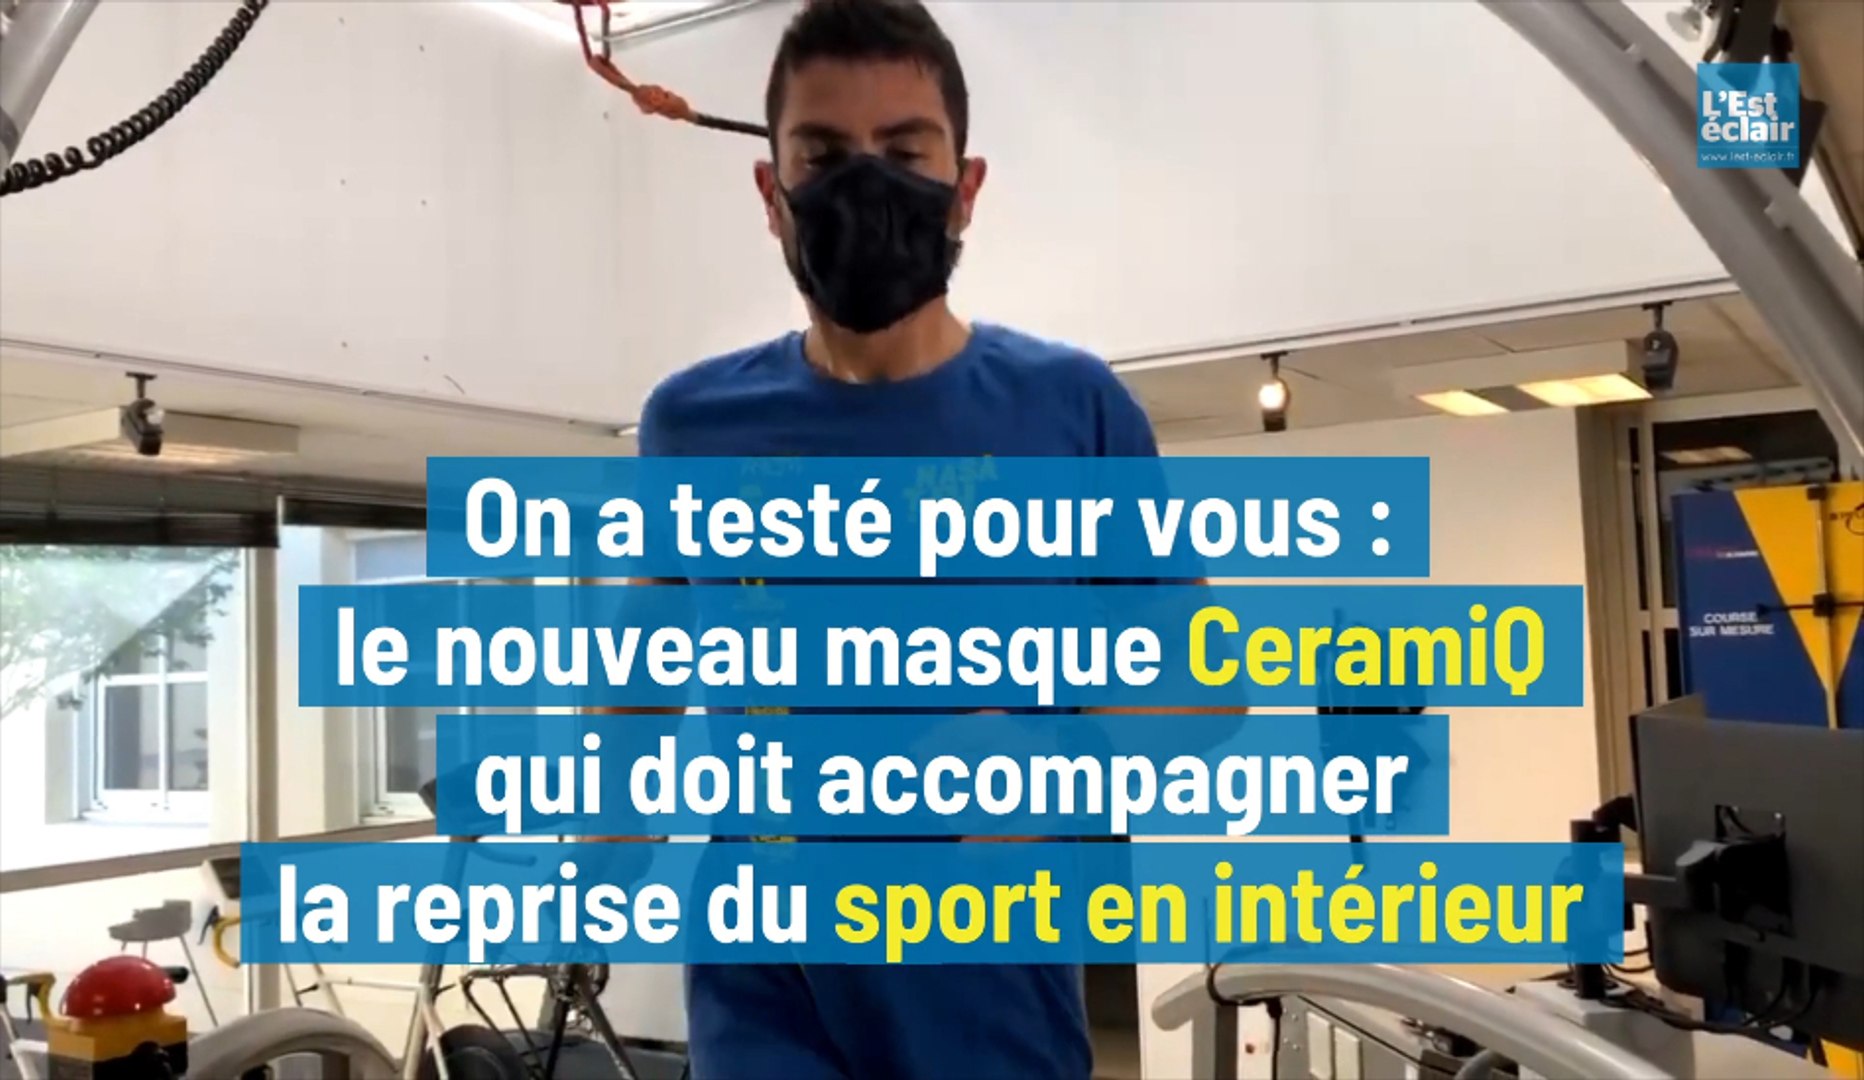 On a testé pour vous : le masque CeramiQ pour accompagner la reprise du  sport en intérieur - Vidéo Dailymotion